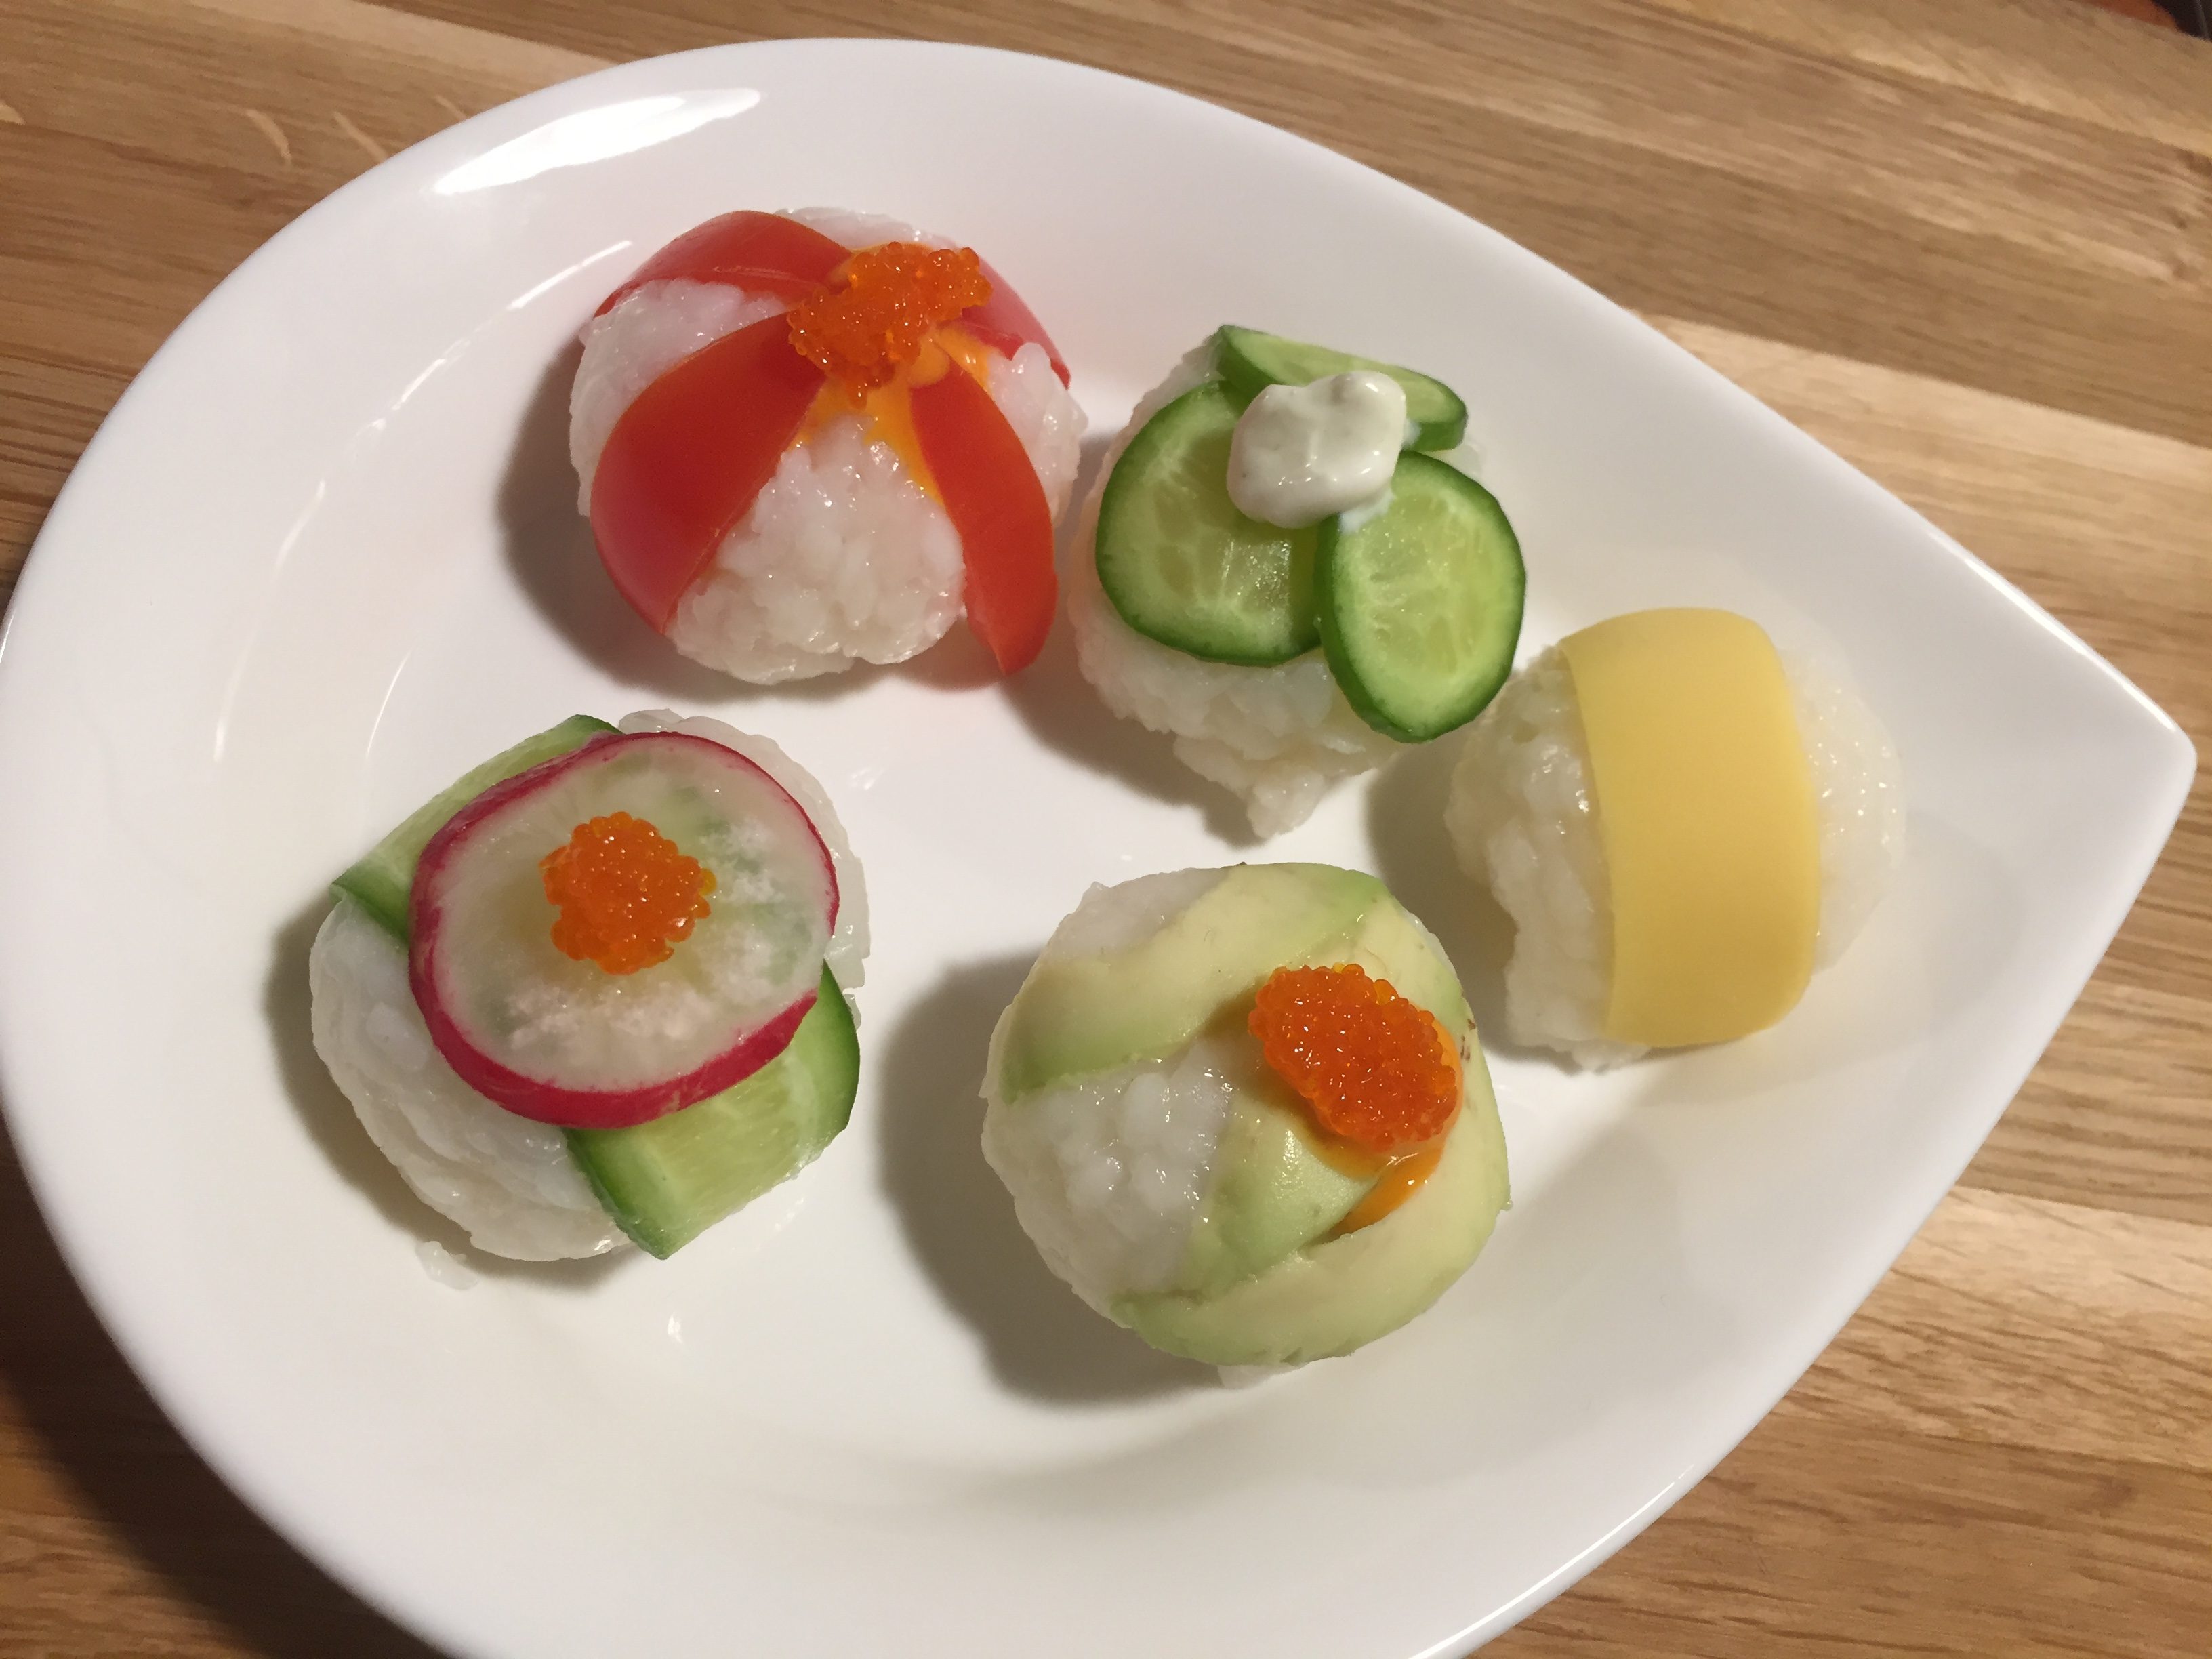 Temari sushi – sushi balls